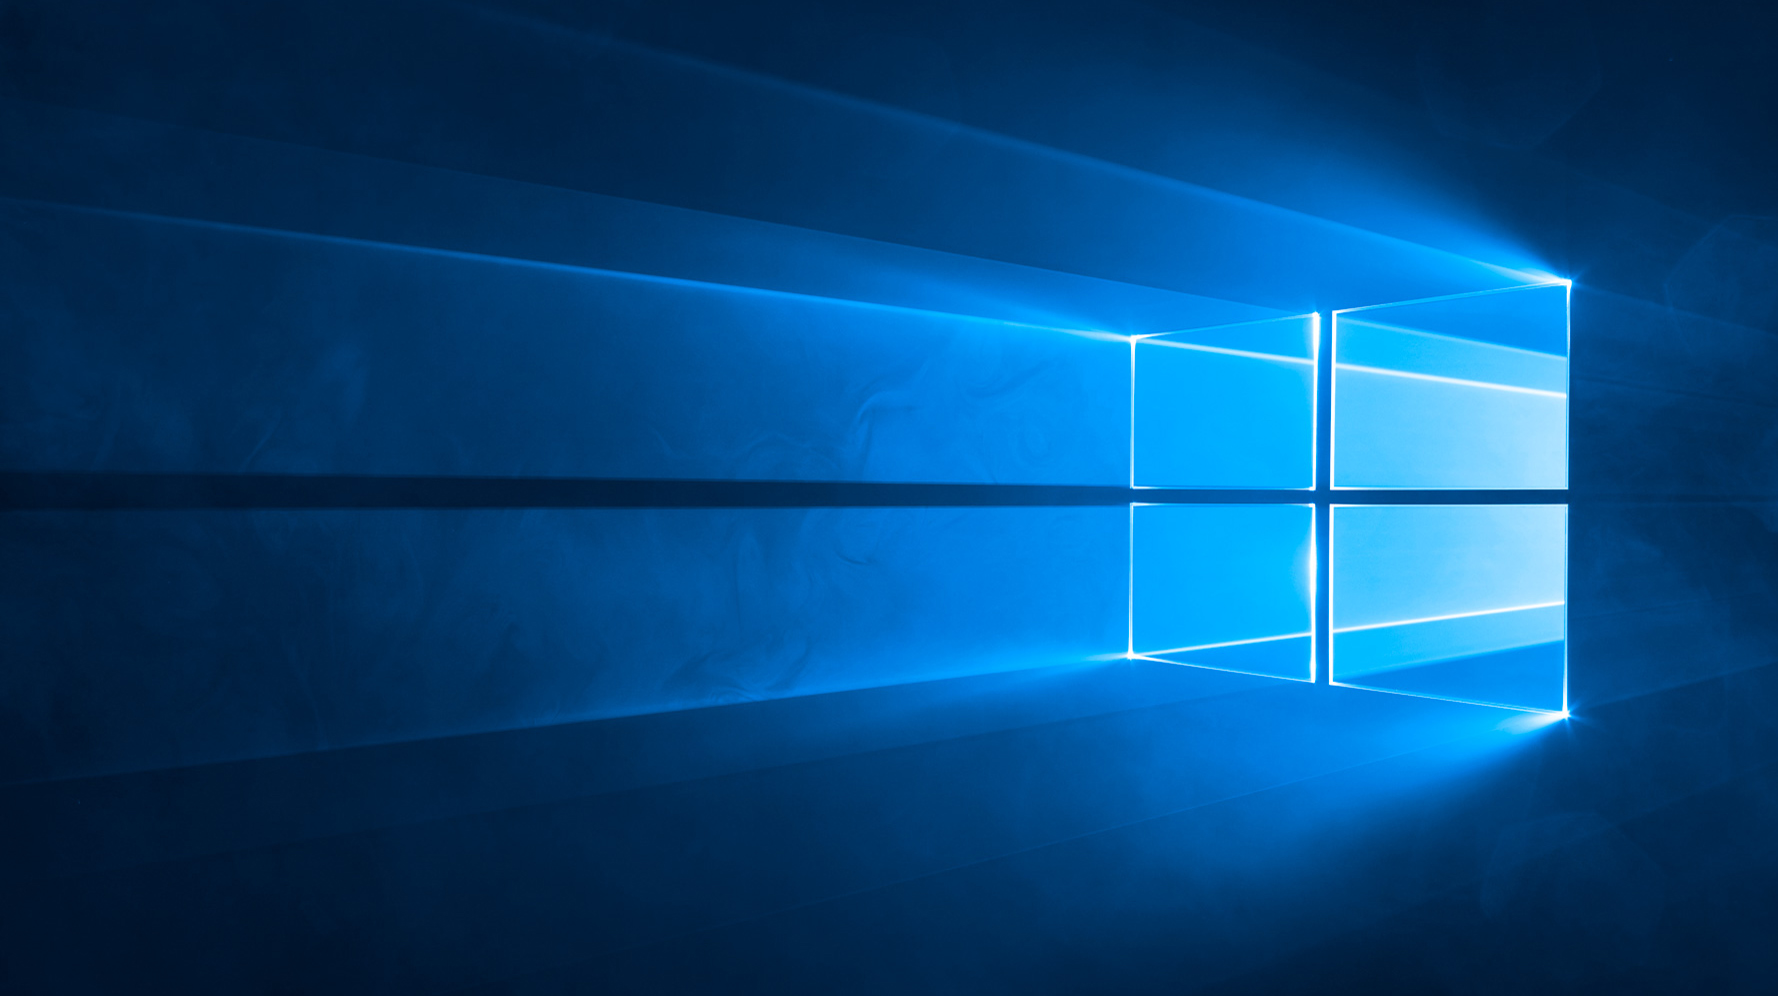 Xem Microsoft chụp hình nền mới của Windows 10 với logo được chiếu sáng  theo kiểu Tron Legacy